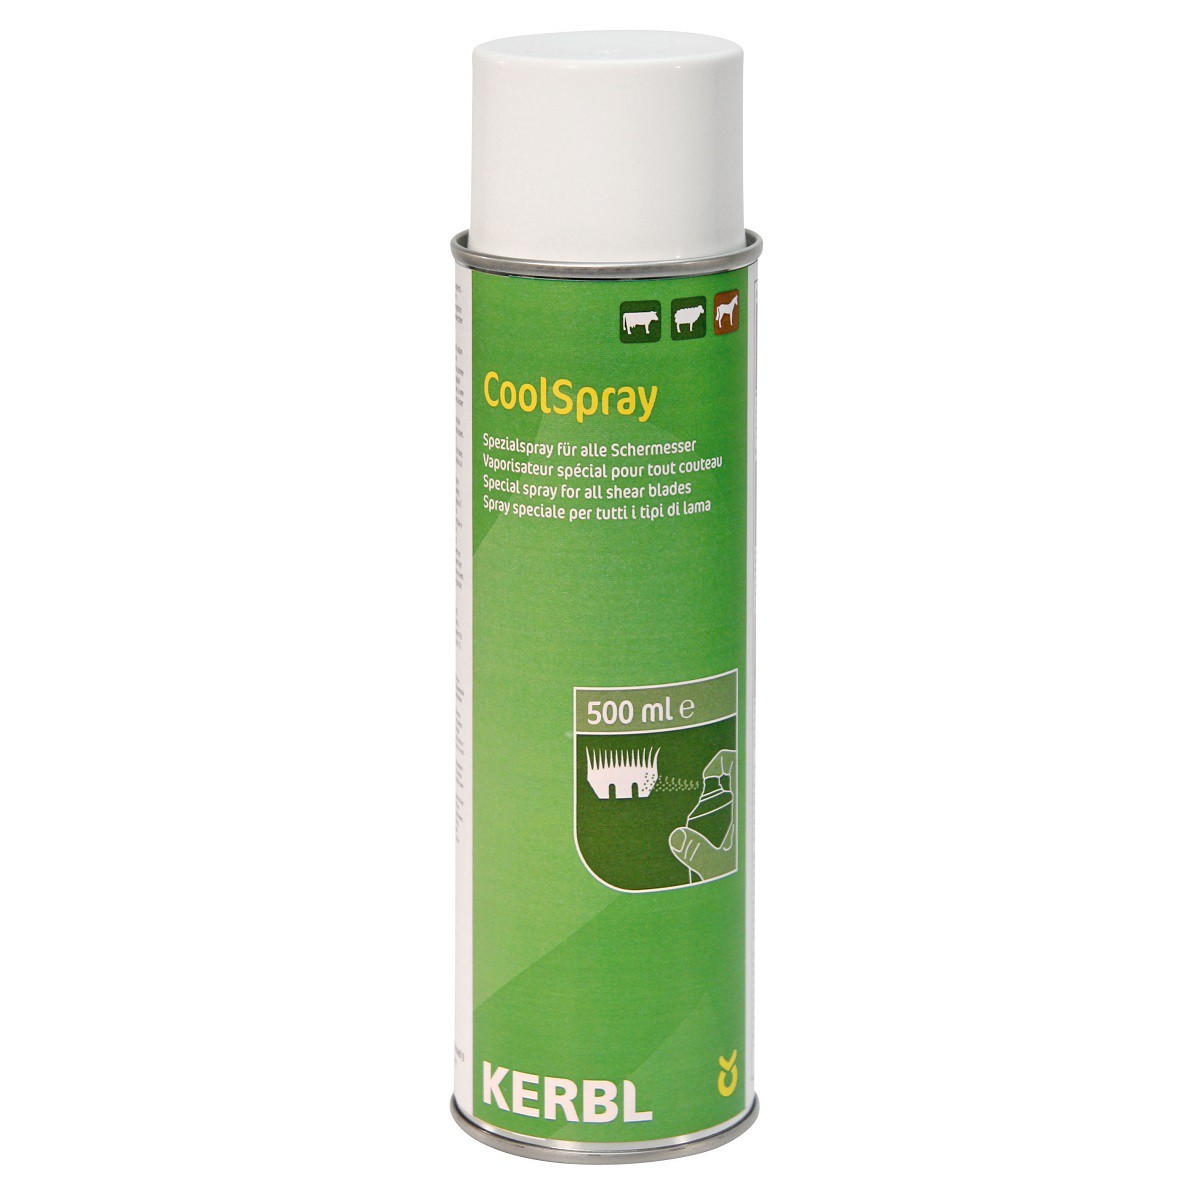 Coolspray spray de refroidissement et de nettoyage Kerbl pour tondeuses 500 ml